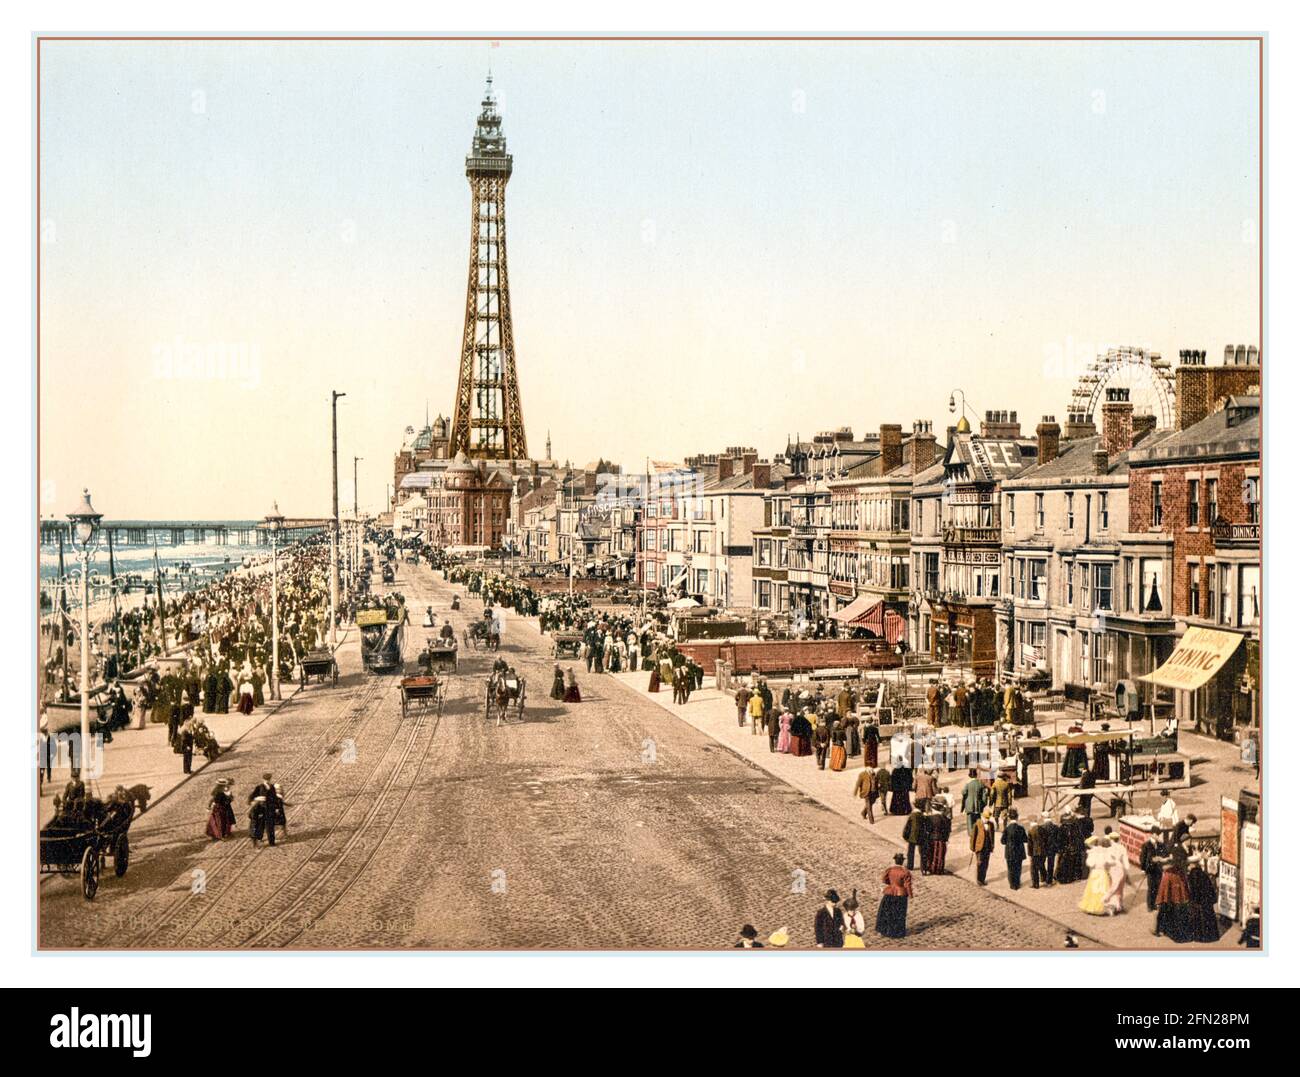 Blackpool 1890er Jahre Pleasure Beach und Tower mit Menschenmassen und Pferden Gezogene Kutschen genießen die Promenade und Sonnenschein Photochrom chromolithograph Great Großbritannien Großbritannien Stockfoto